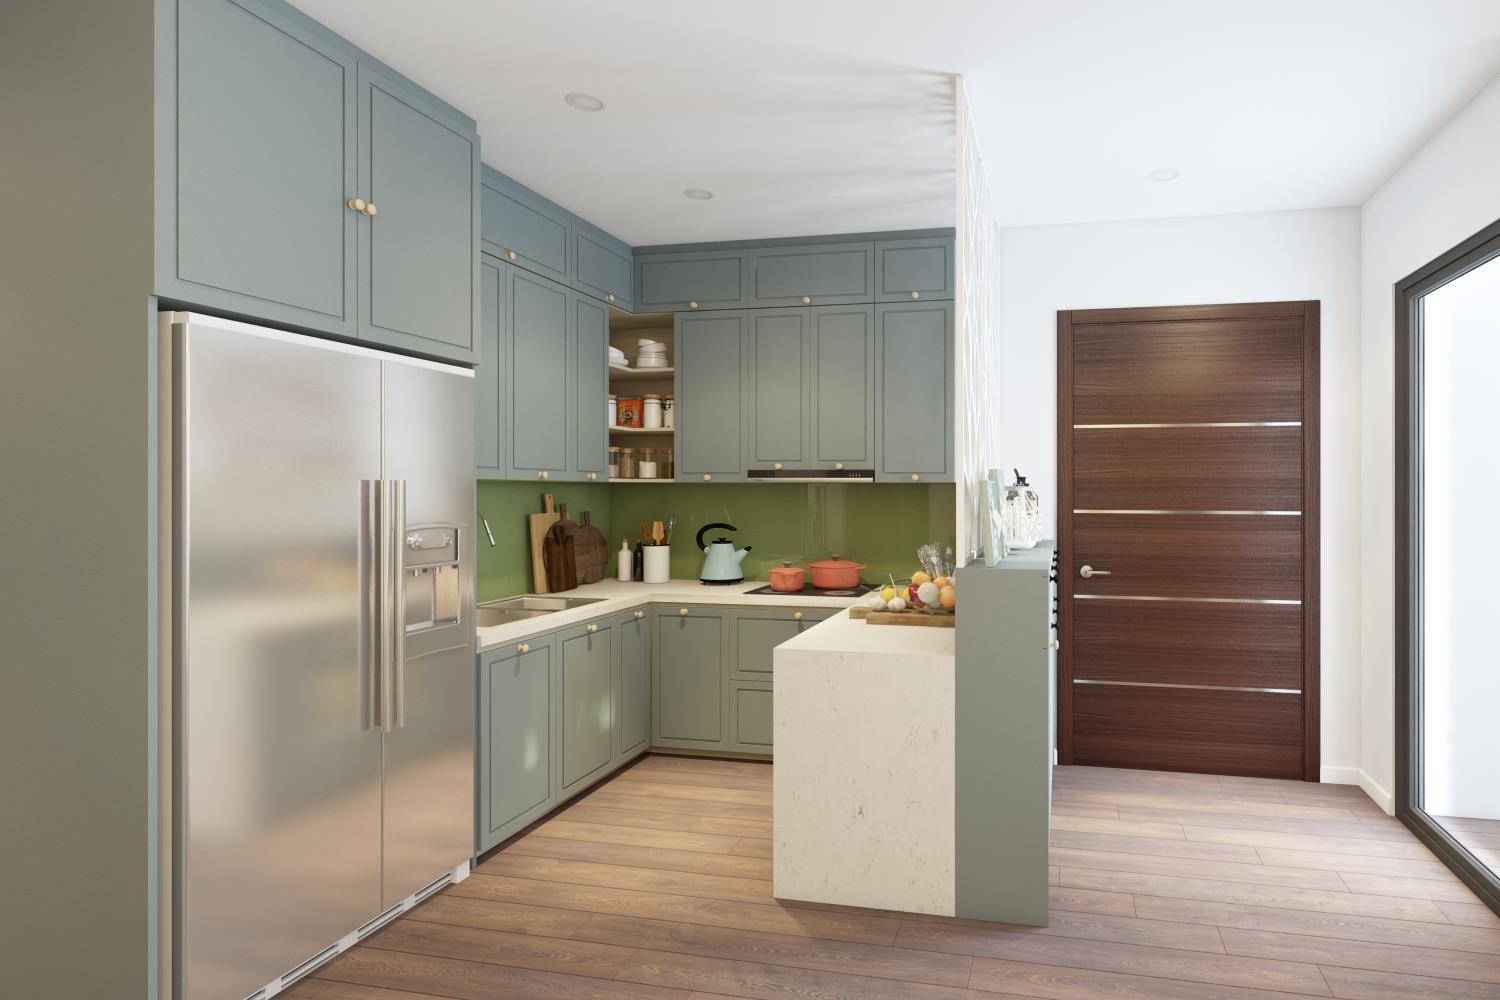 Sự thay đổi nội thất phòng bếp hiện đại đã đến nhà ống của bạn! Với thiết kế bếp mở, bạn sẽ hưởng thụ không gian tuyệt vời và khả năng tương tác trong quá trình thực hiện các món ăn ngon. Hãy thưởng thức các hình ảnh để khám phá chi tiết.